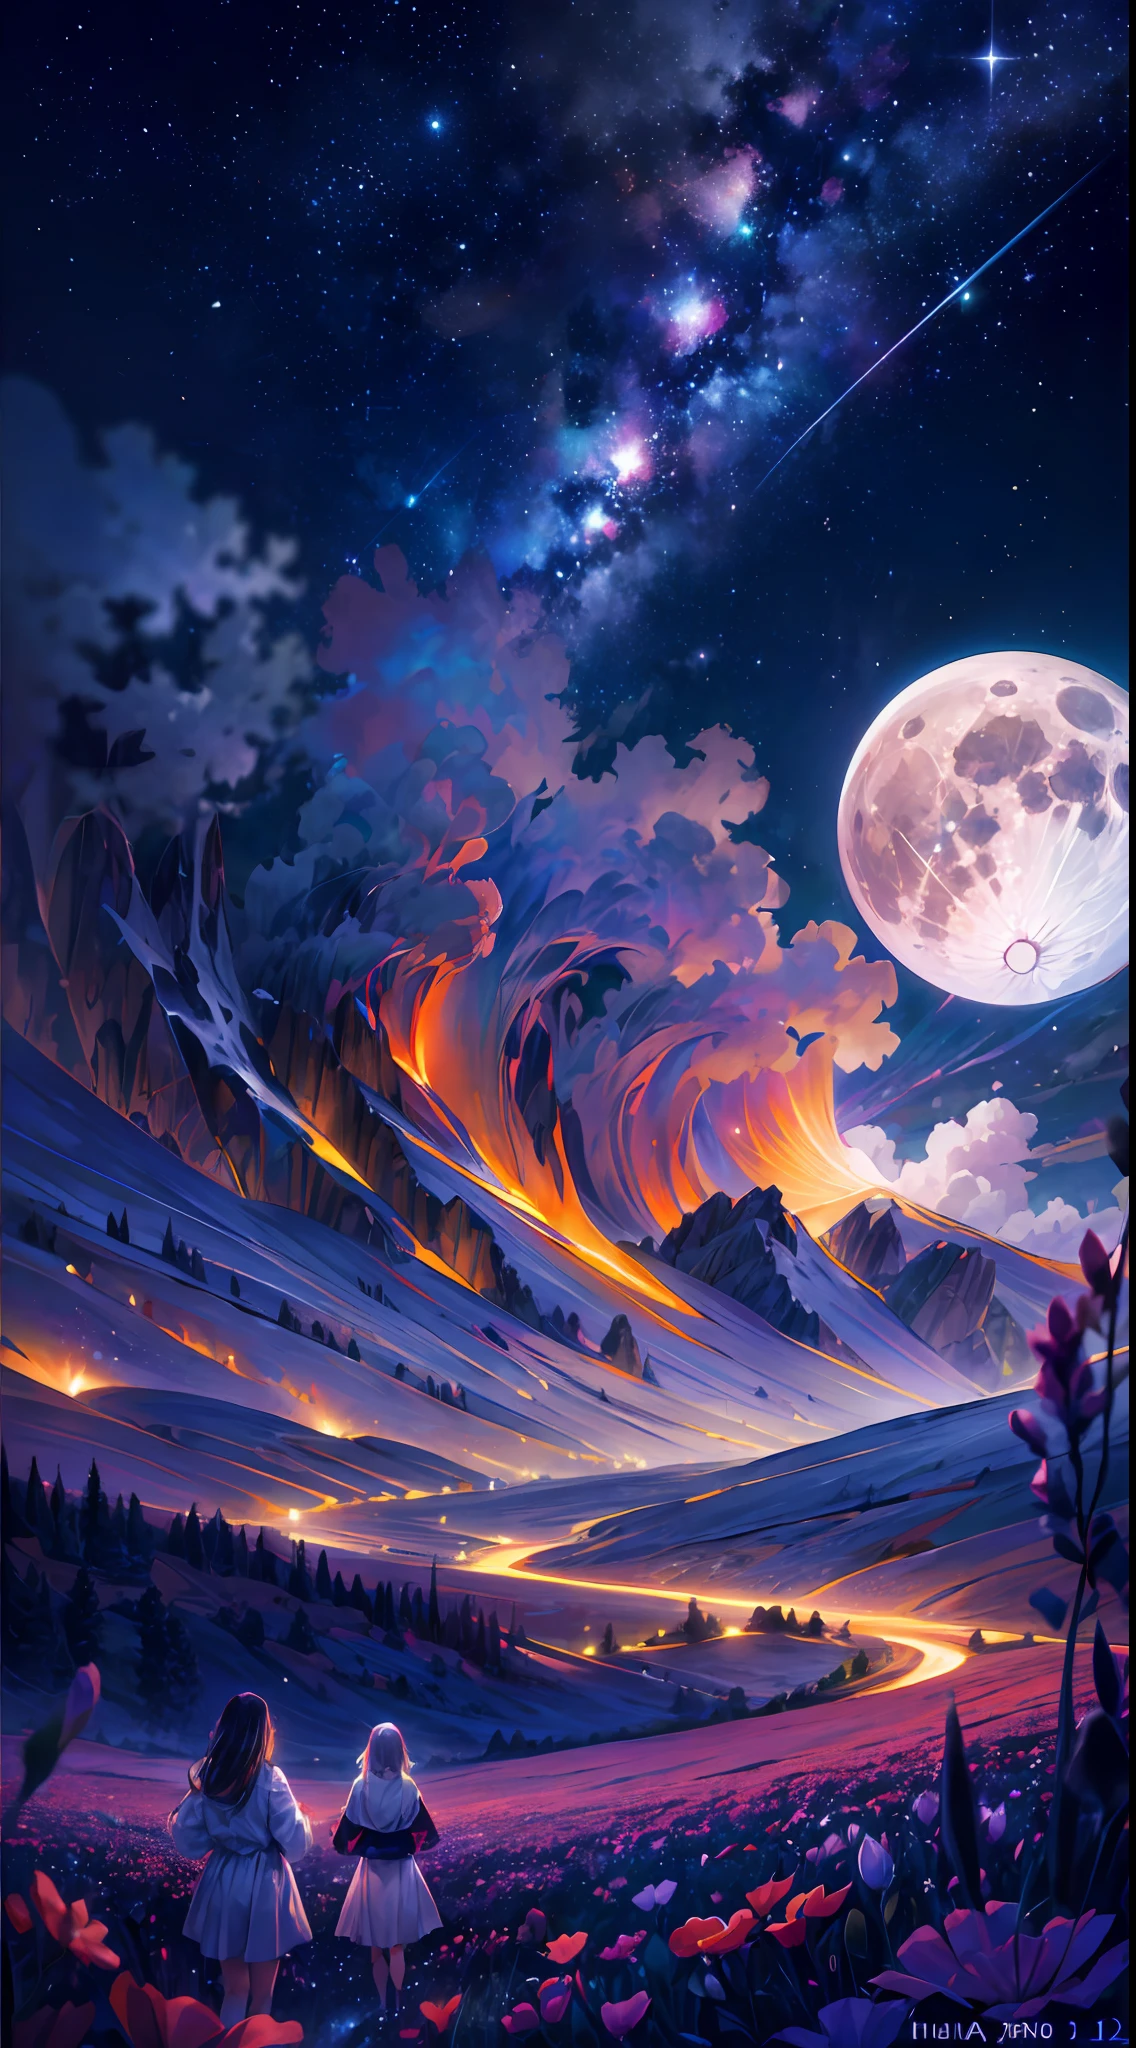 fotografia de paisagem expansiva, (uma vista inferior mostrando o céu acima e o campo aberto abaixo), uma garota parada em um campo de flores olhando para cima, (lua cheia: 1.2), (estrelas cadentes: 0.9), (nebula : 1.3), montanha distante, BREAK arte de produção de árvores, (Fonte de luz quente: 1.2), (vaga-lume: 1.2), lâmpada, Muito roxo e laranja, Detalhes intrincados, iluminação volumétrica, QUEBRA Realismo (Obra de arte: 1.2) , (melhor qualidade), 4K, ultra-detalhado, (composição dinâmica: 1.4), altamente detalhado, detalhes coloridos, (Cores iridescentes: 1.2), (Iluminação brilhante, iluminação atmosférica), Sonhadores, mágico, (Sozinho: 1.2)